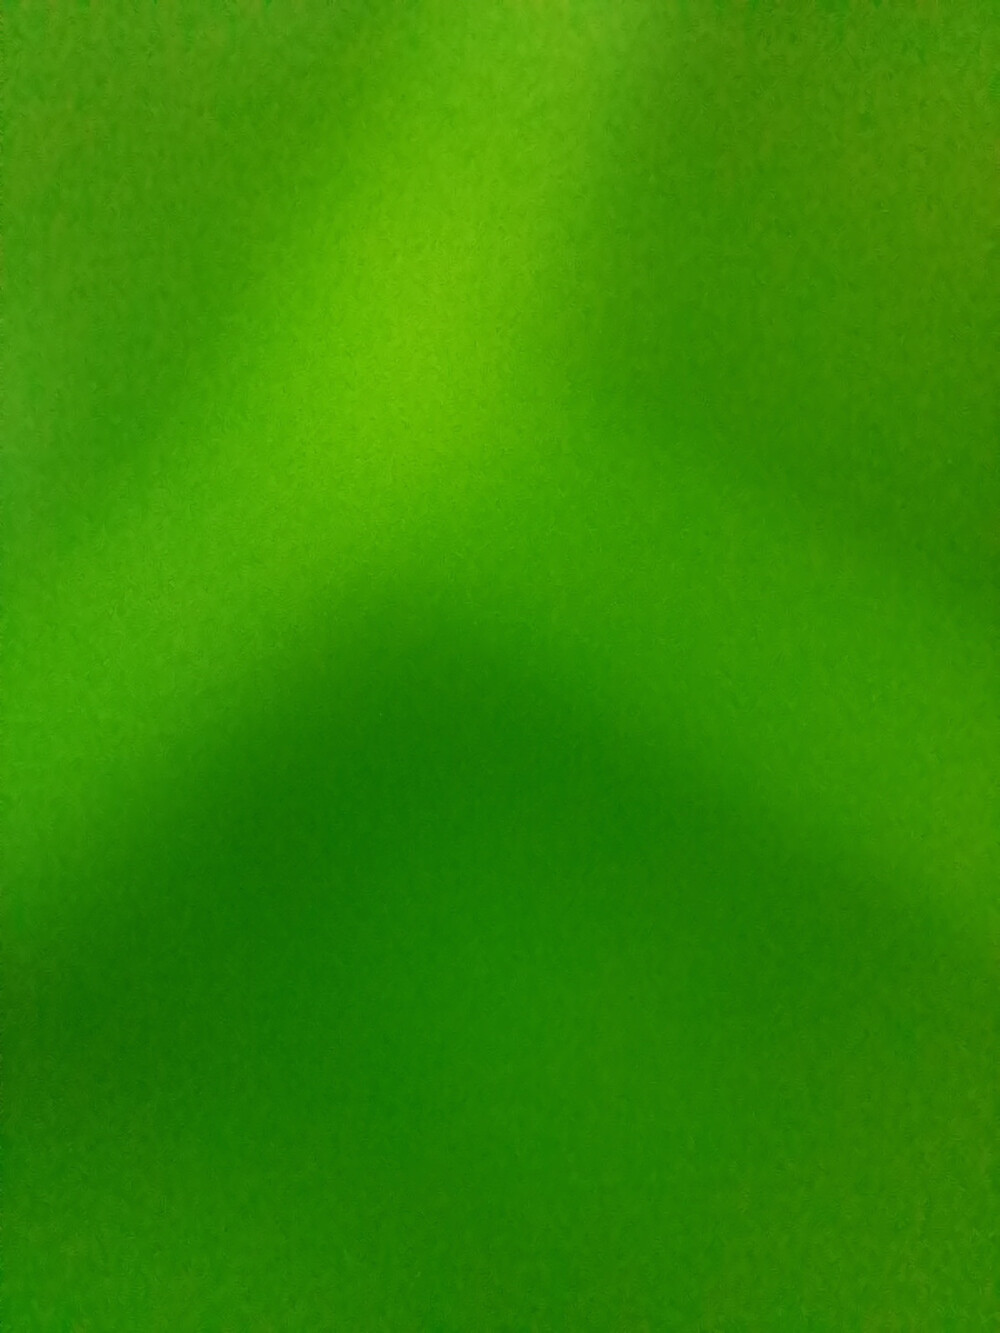 纯绿底背景图片